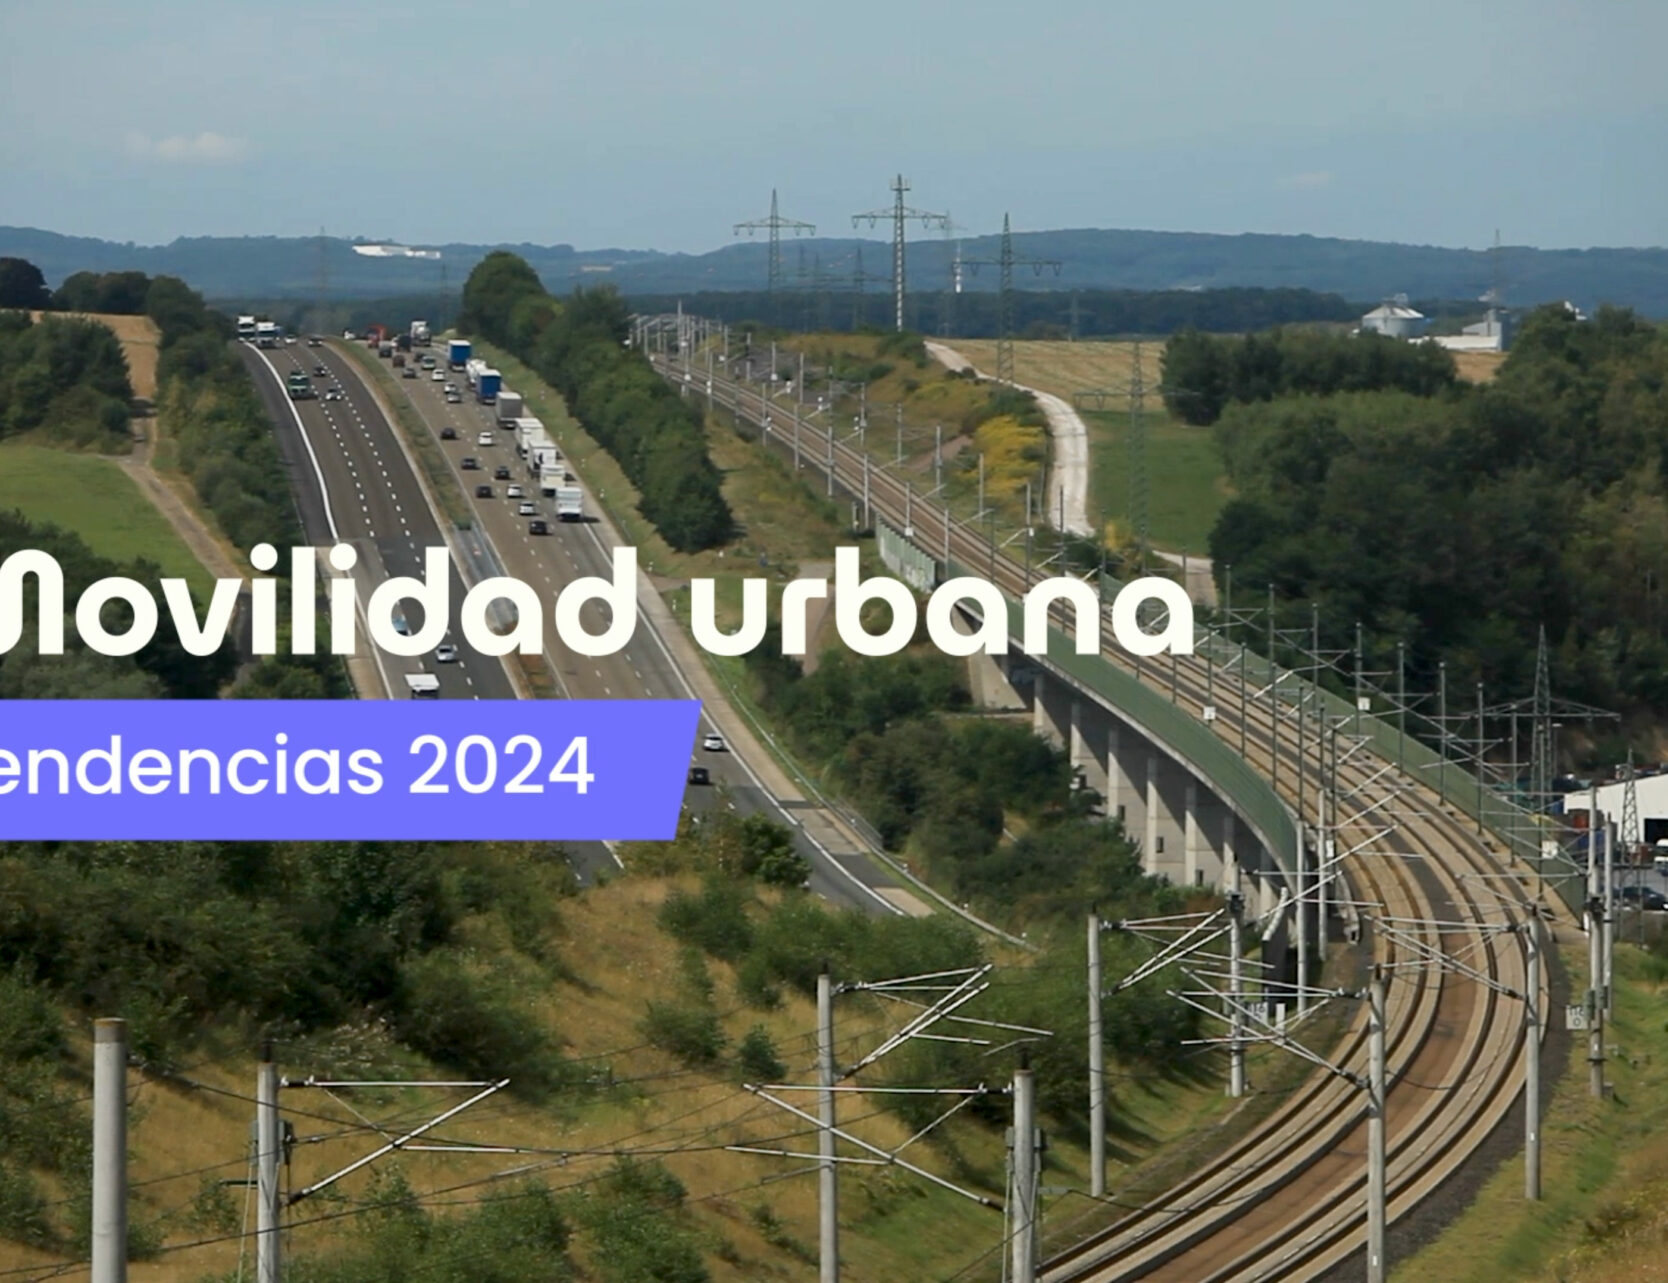 Tendencias de la movilidad urbana en 2024